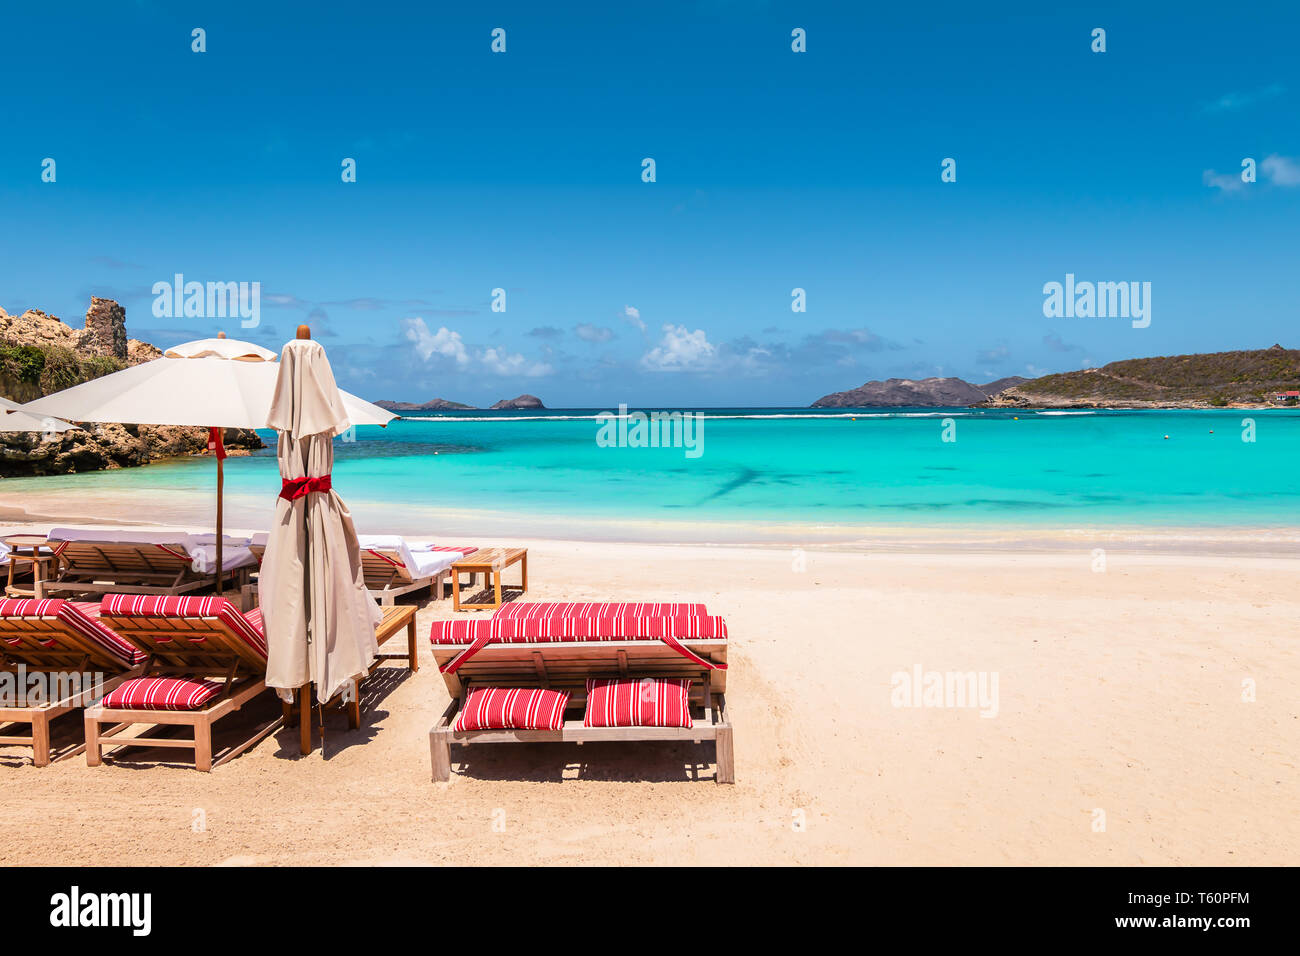 Sedie a sdraio e ombrellone in spiaggia tropicale. La vacanza estiva e il rilassamento dello sfondo. Foto Stock